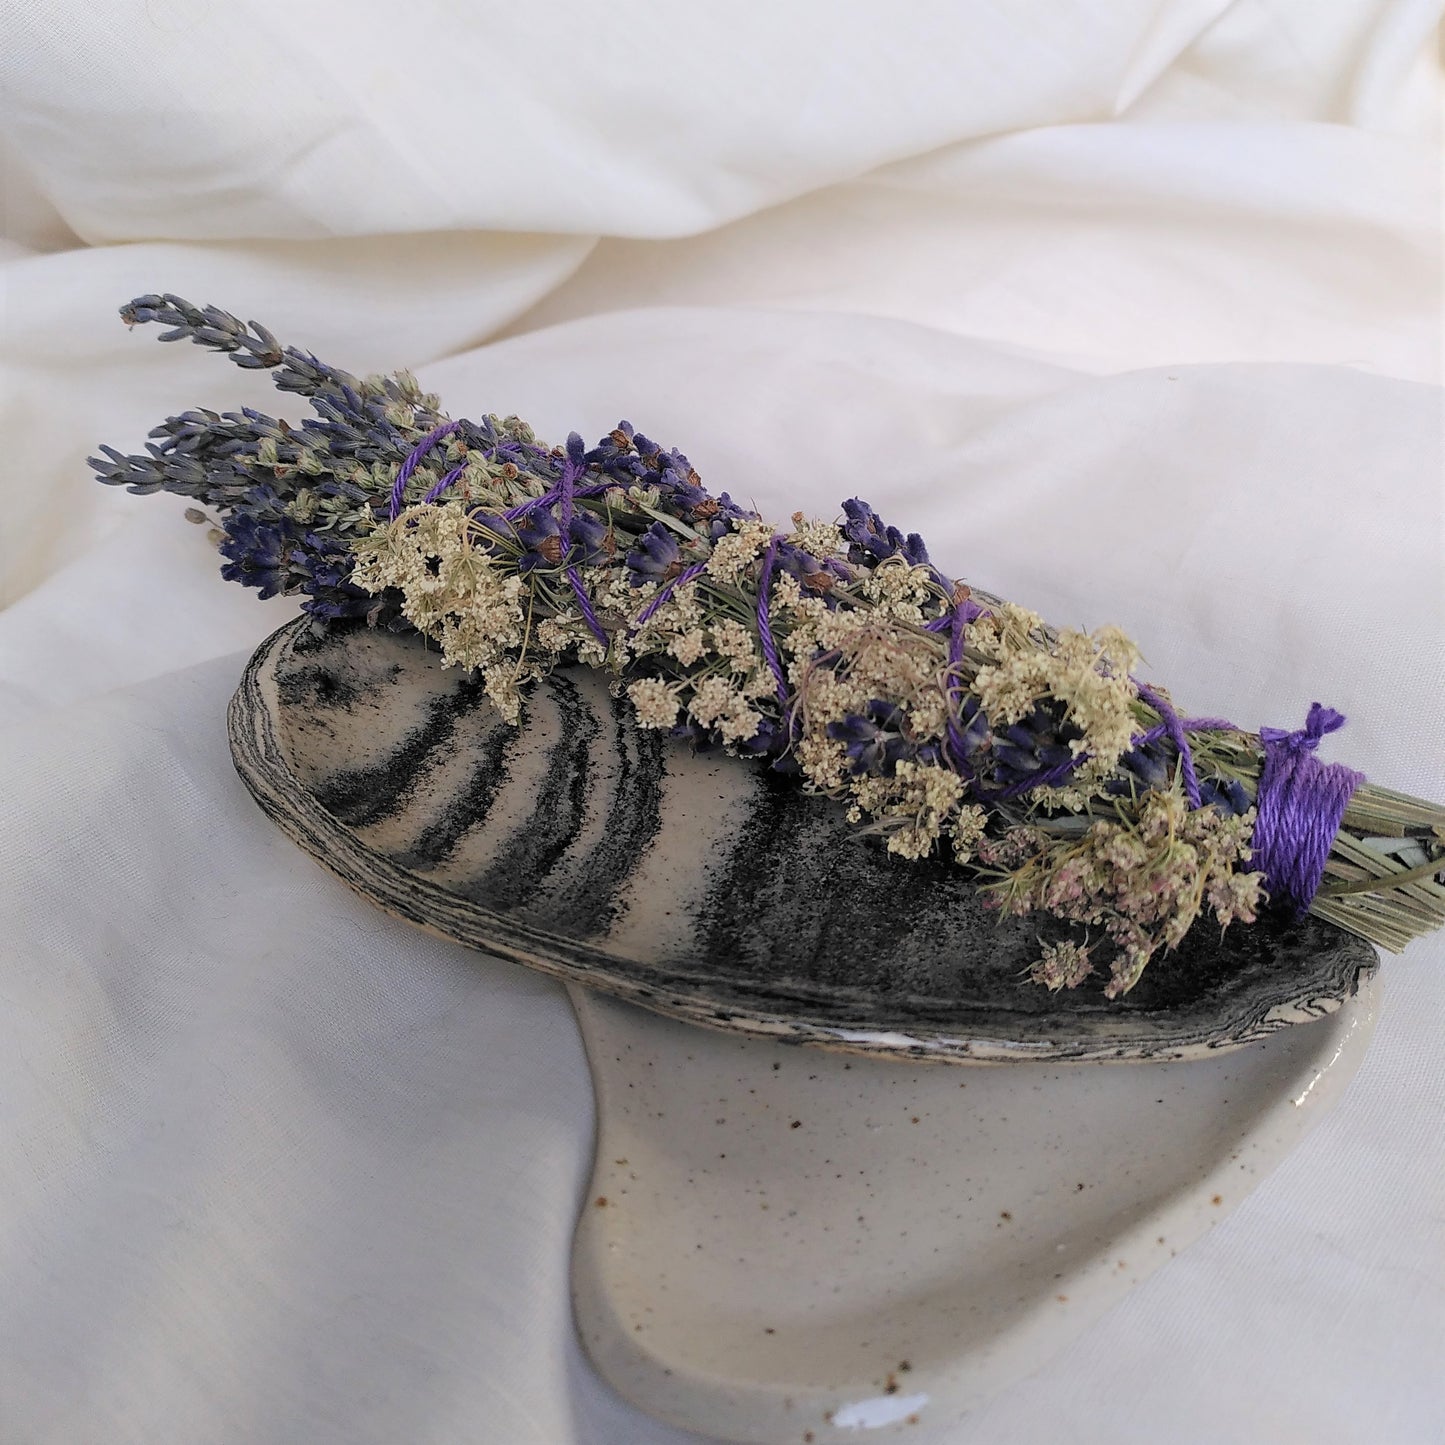 Flower Smoke Wand // Purple Queen